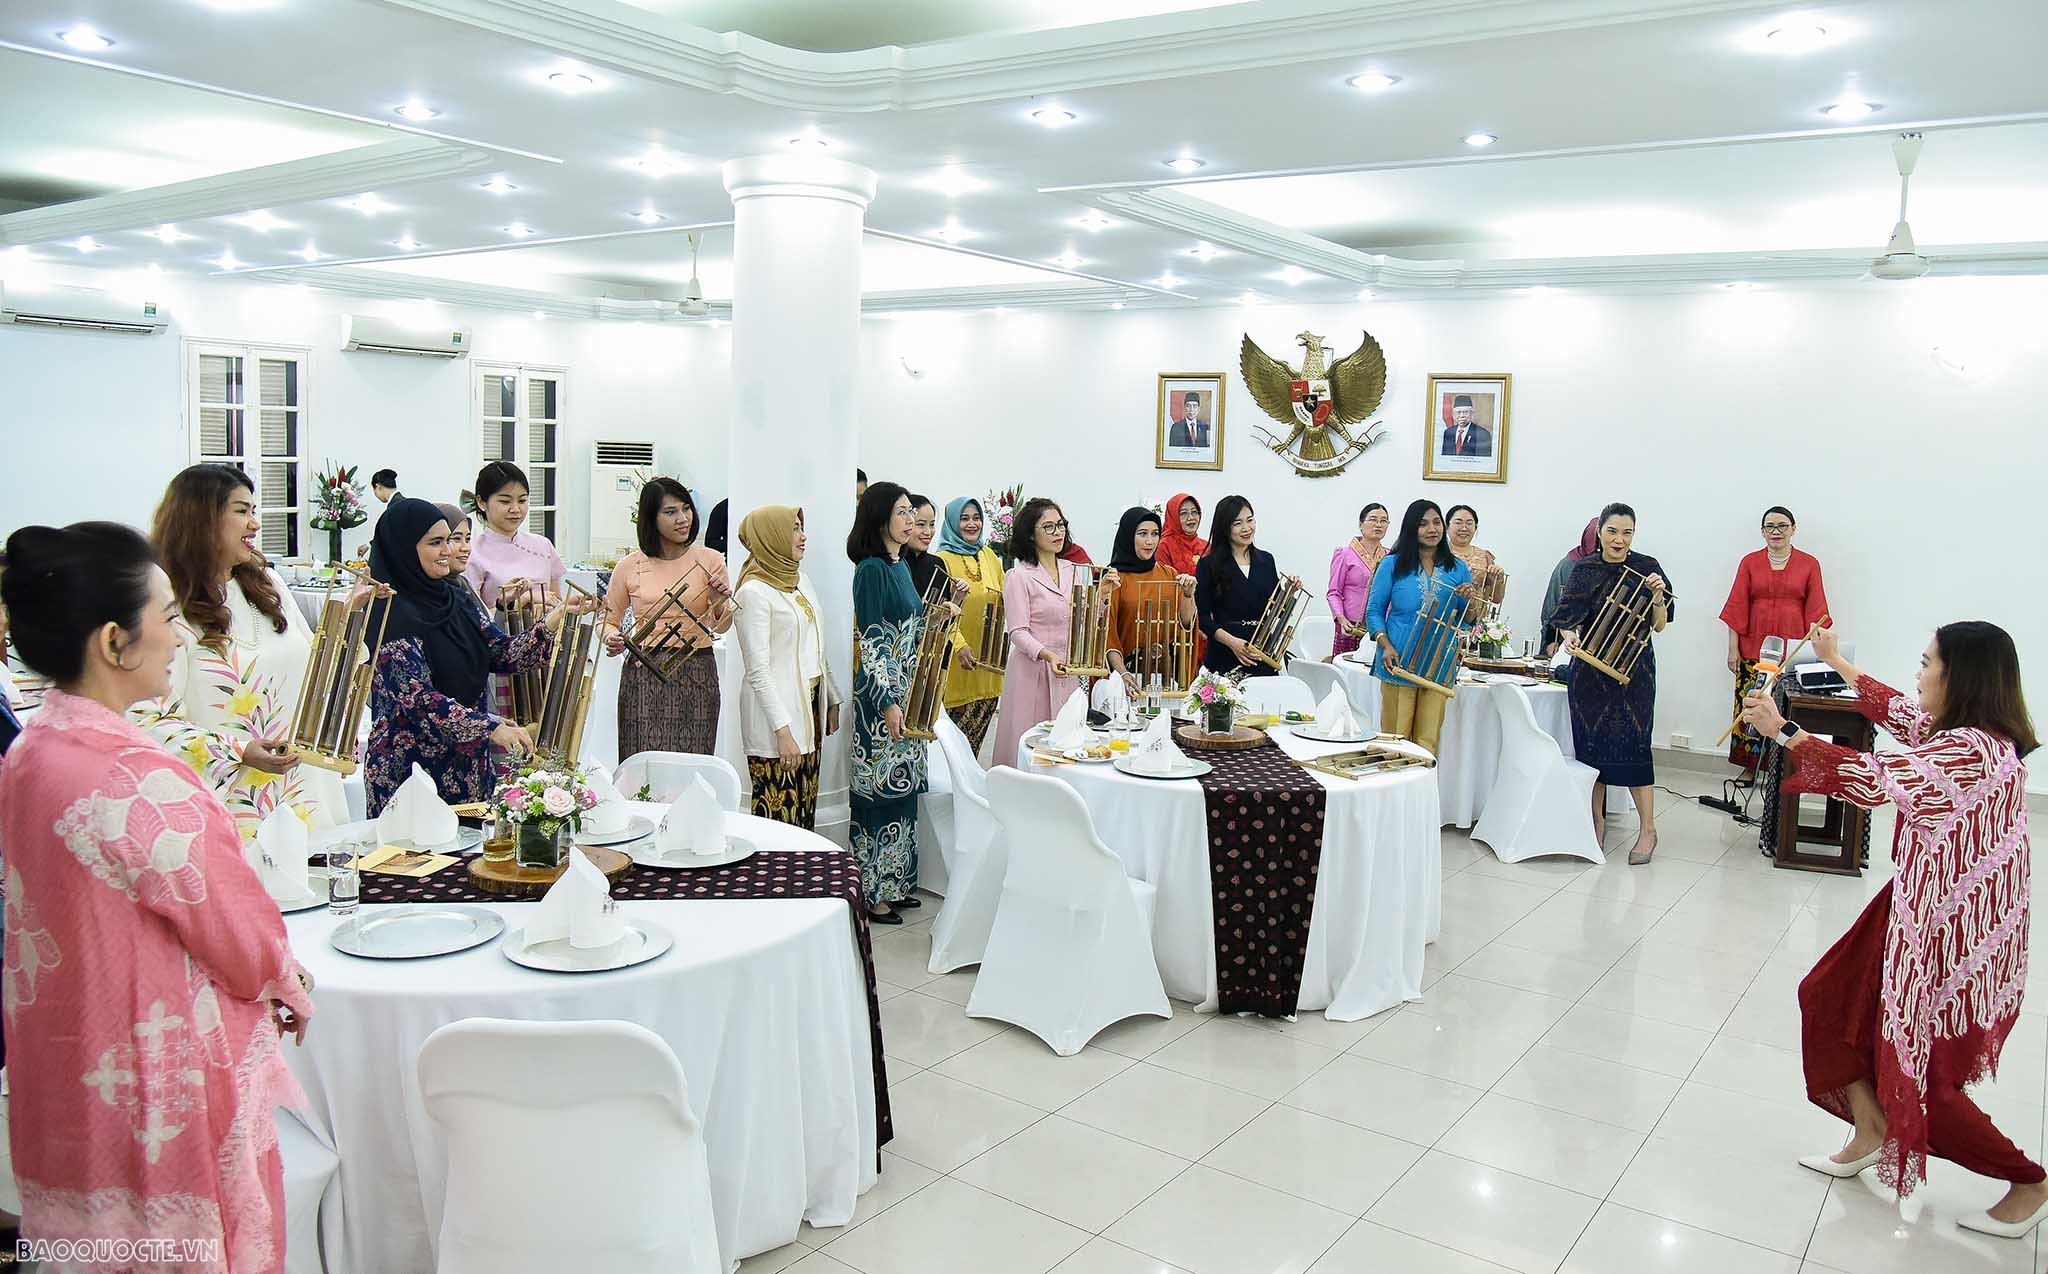 Nhóm AWCH trải nghiệm chơi đàn Angklung của Indonesia